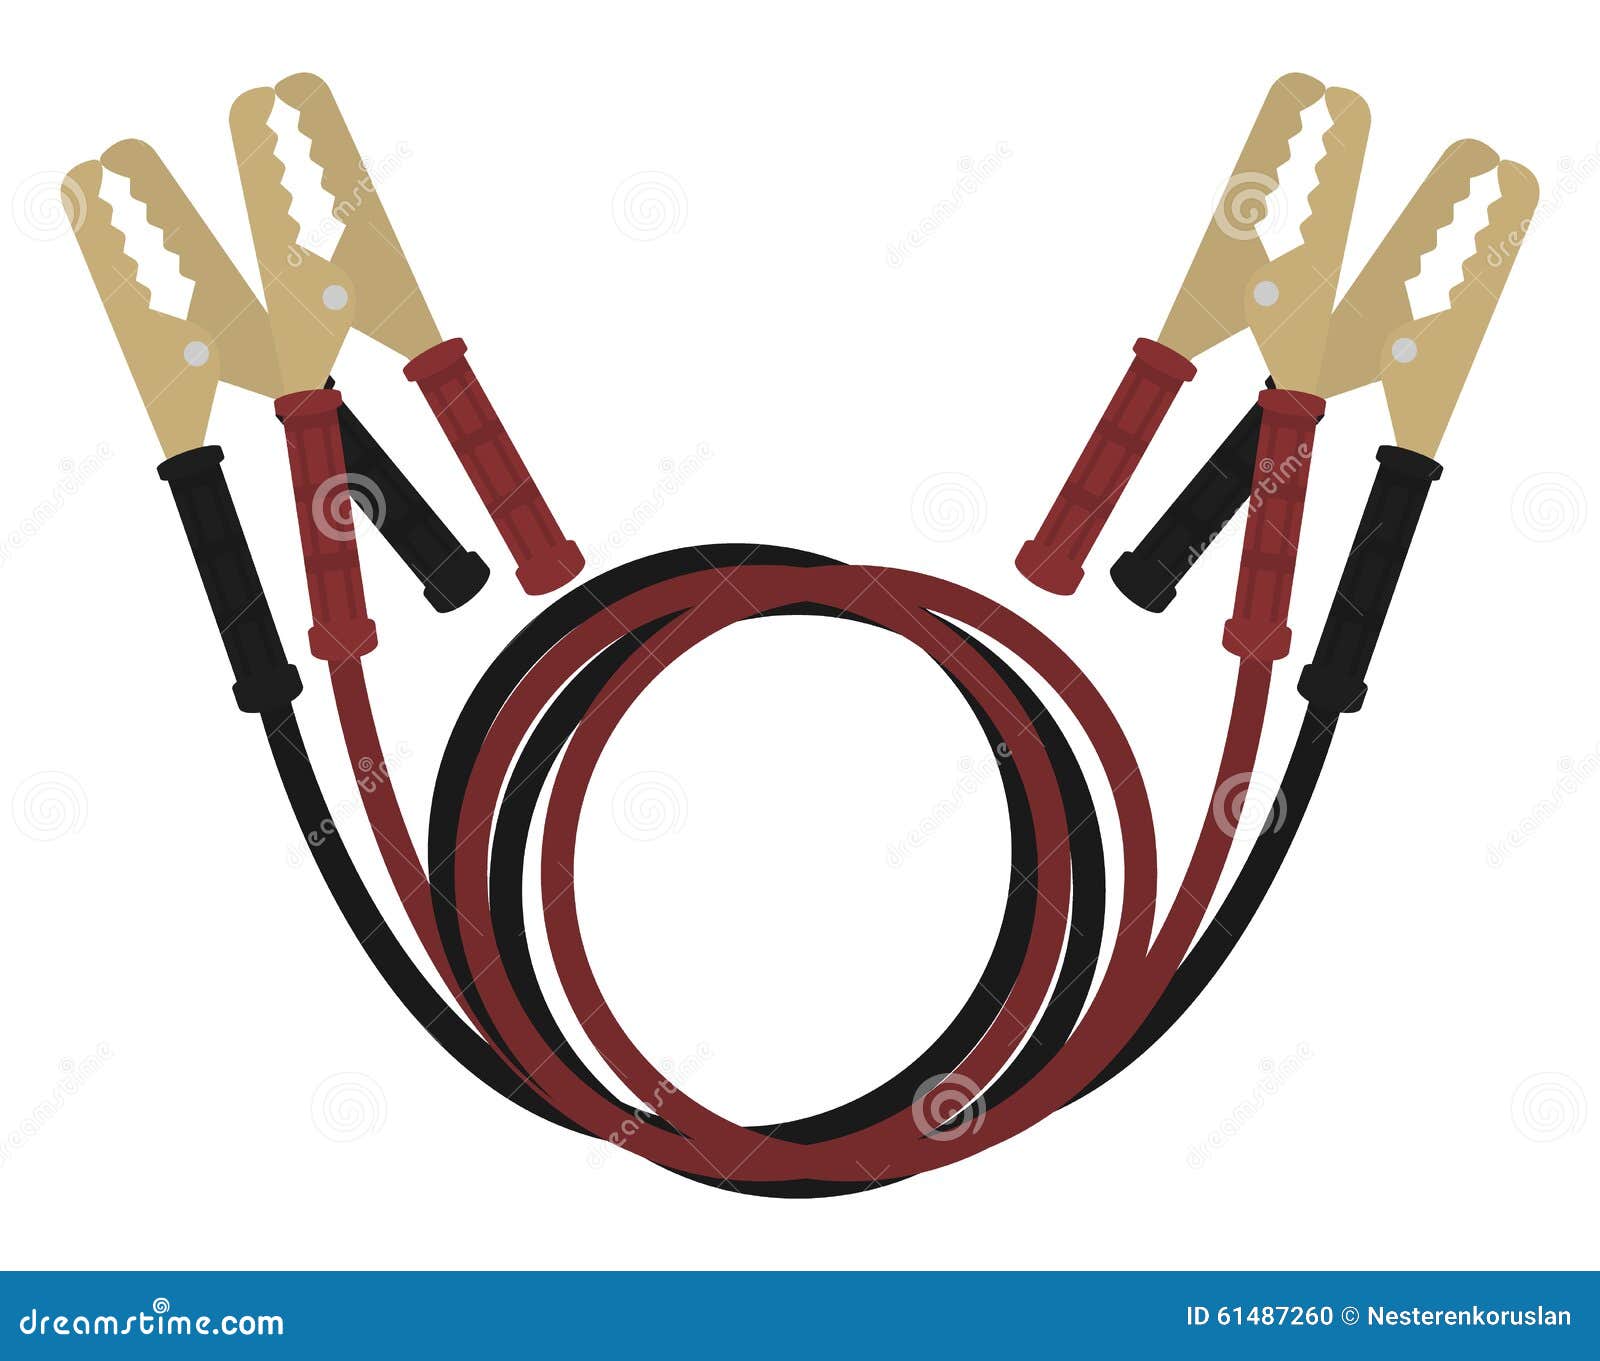 car jumper power cables